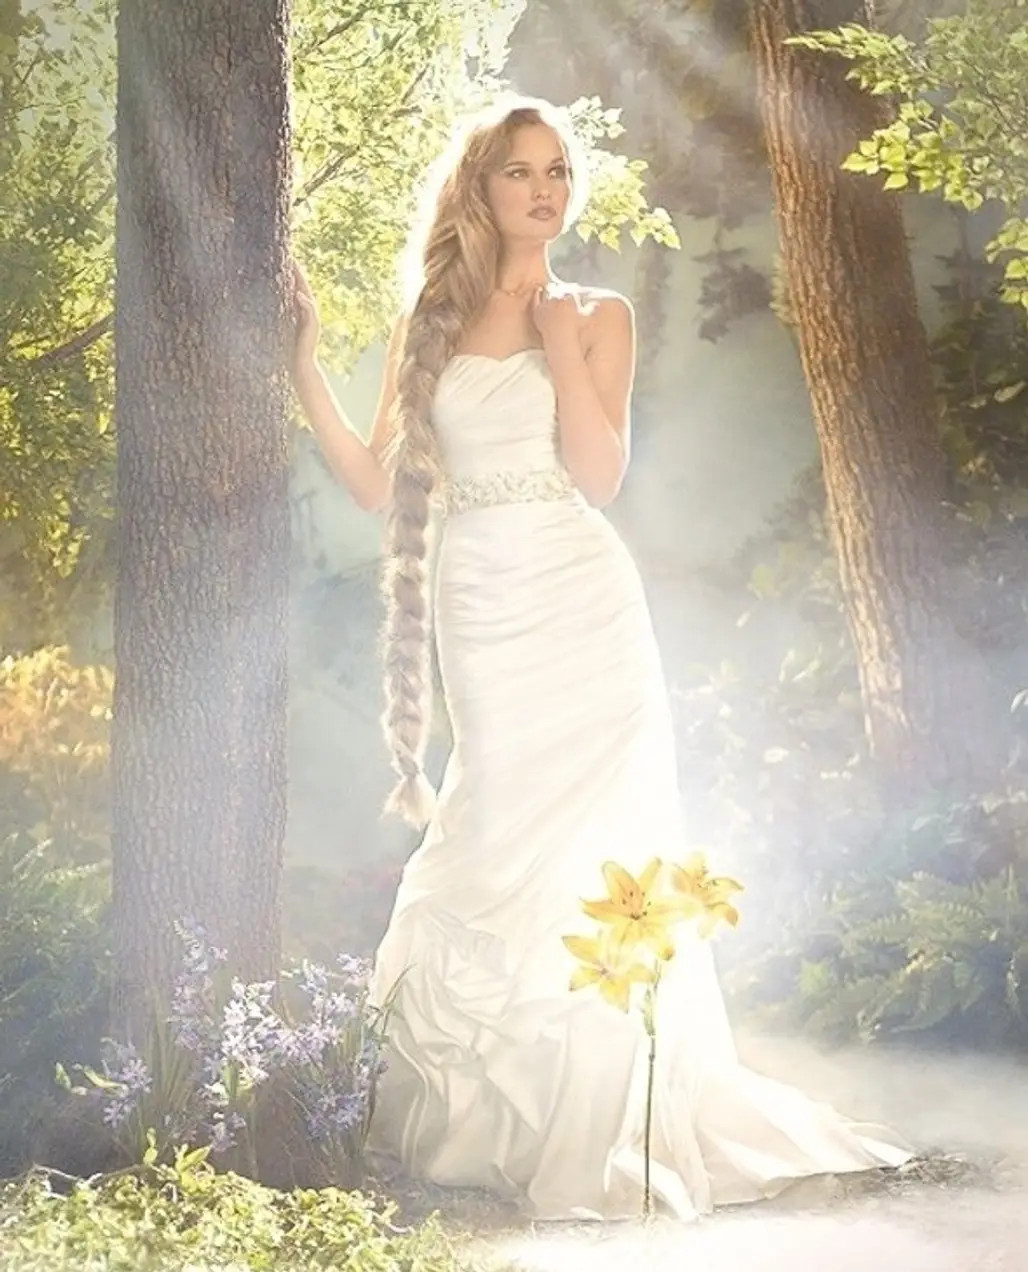 The Fairy Tale Wedding